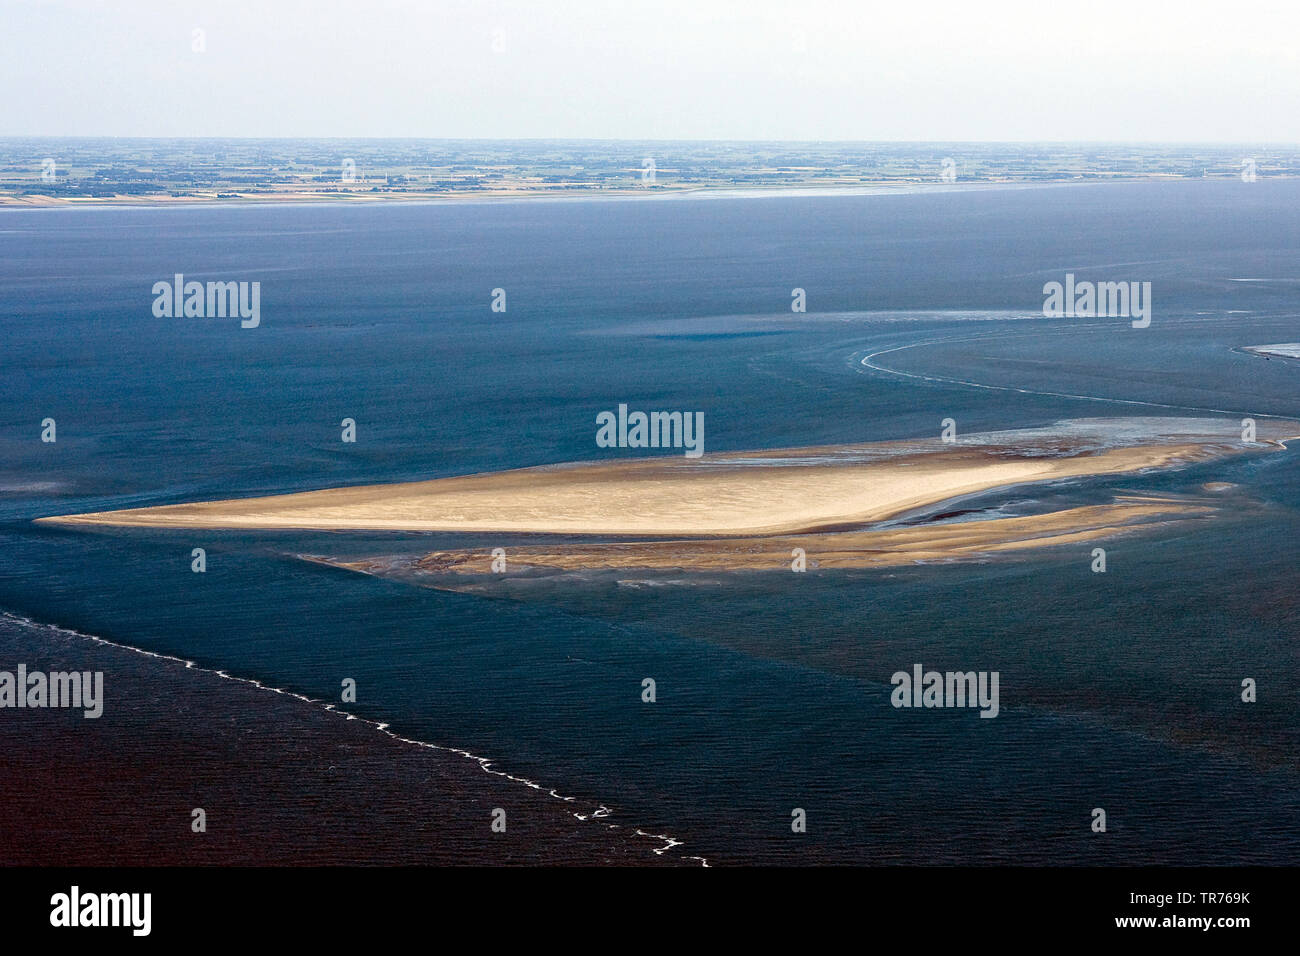 Banco de arena en el Mar del Norte, aerofotografía, Países Bajos Foto de stock